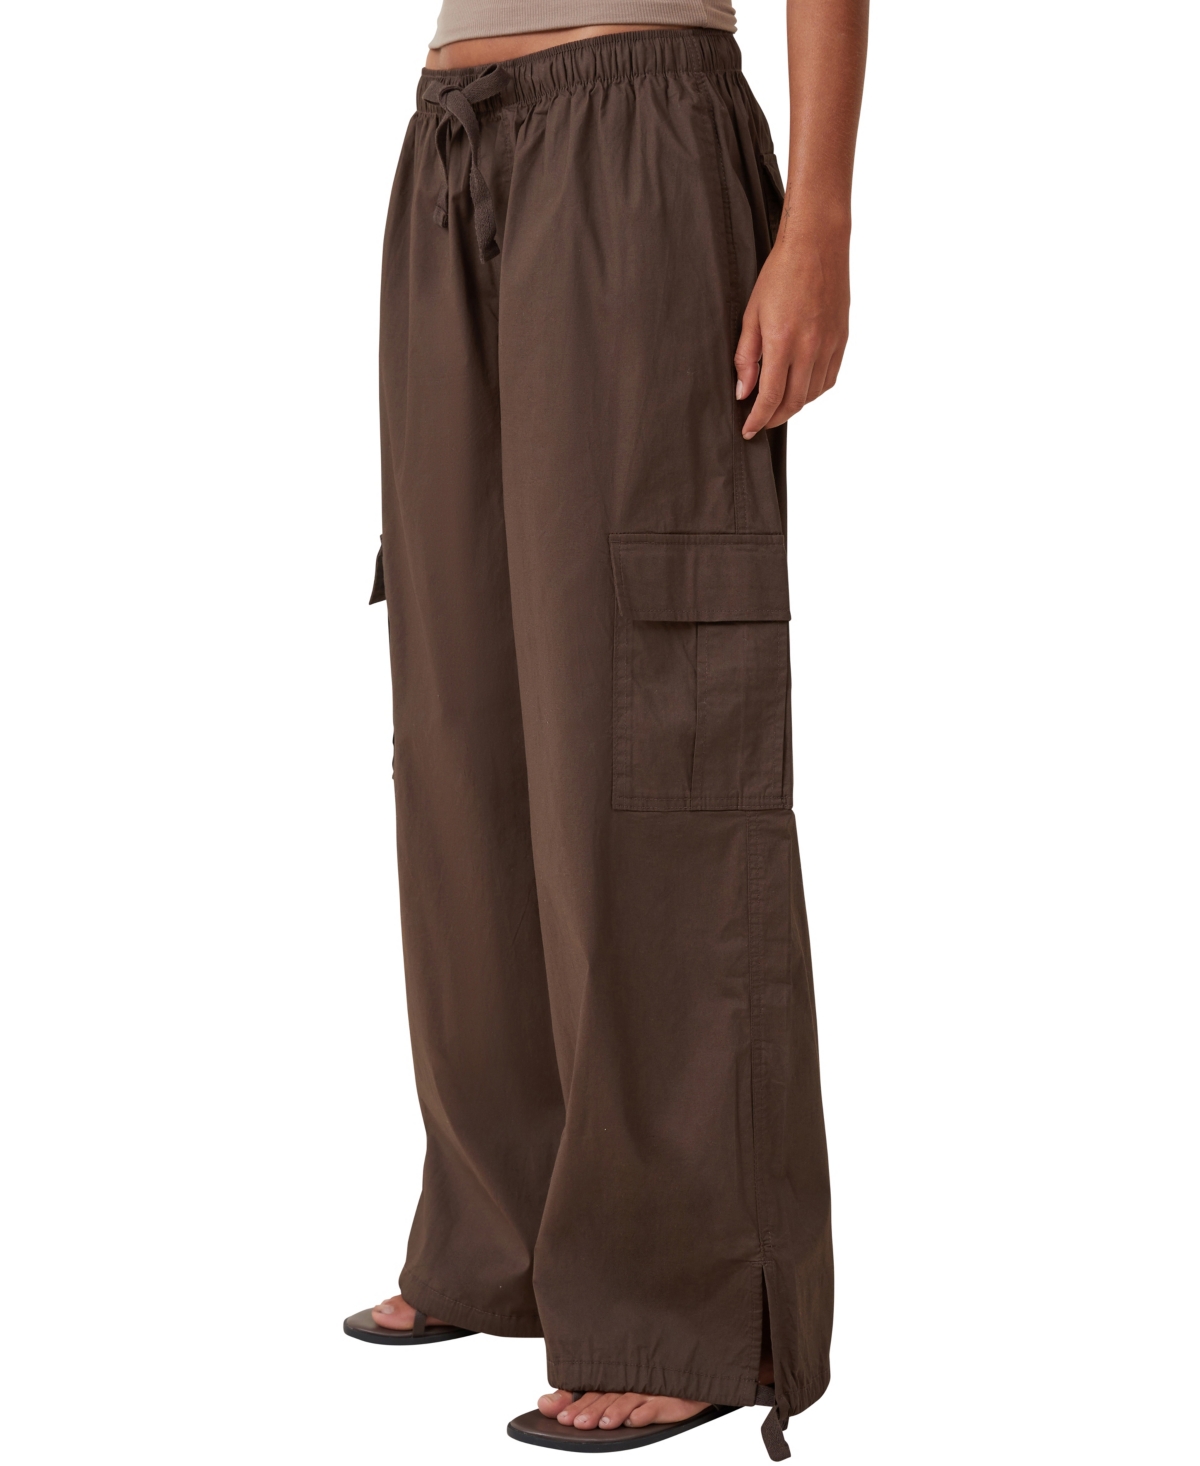 Women's Summer Cargo Pants - Dark Brown